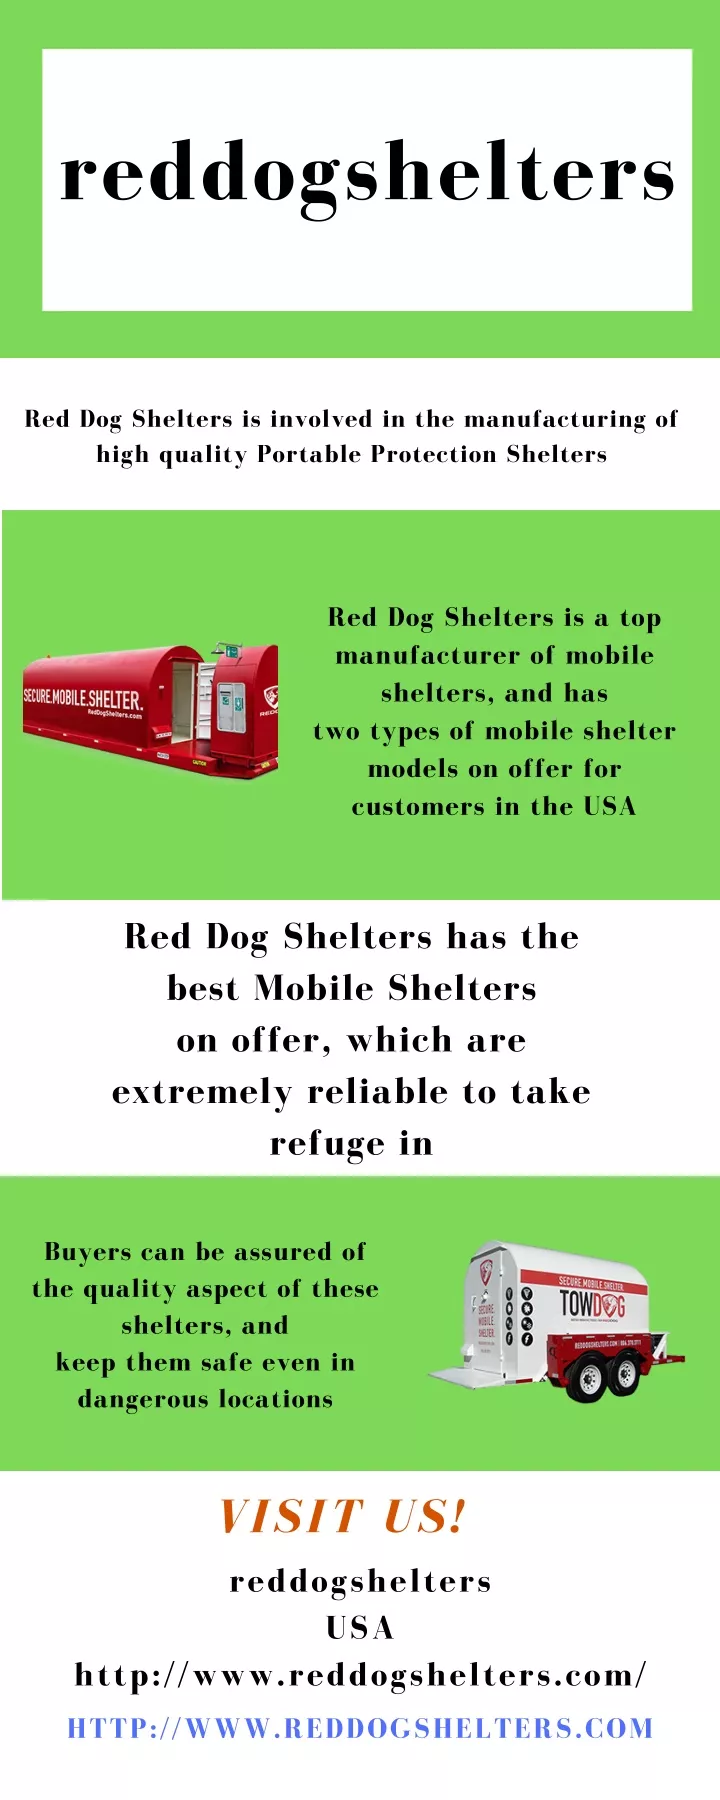 reddogshelters